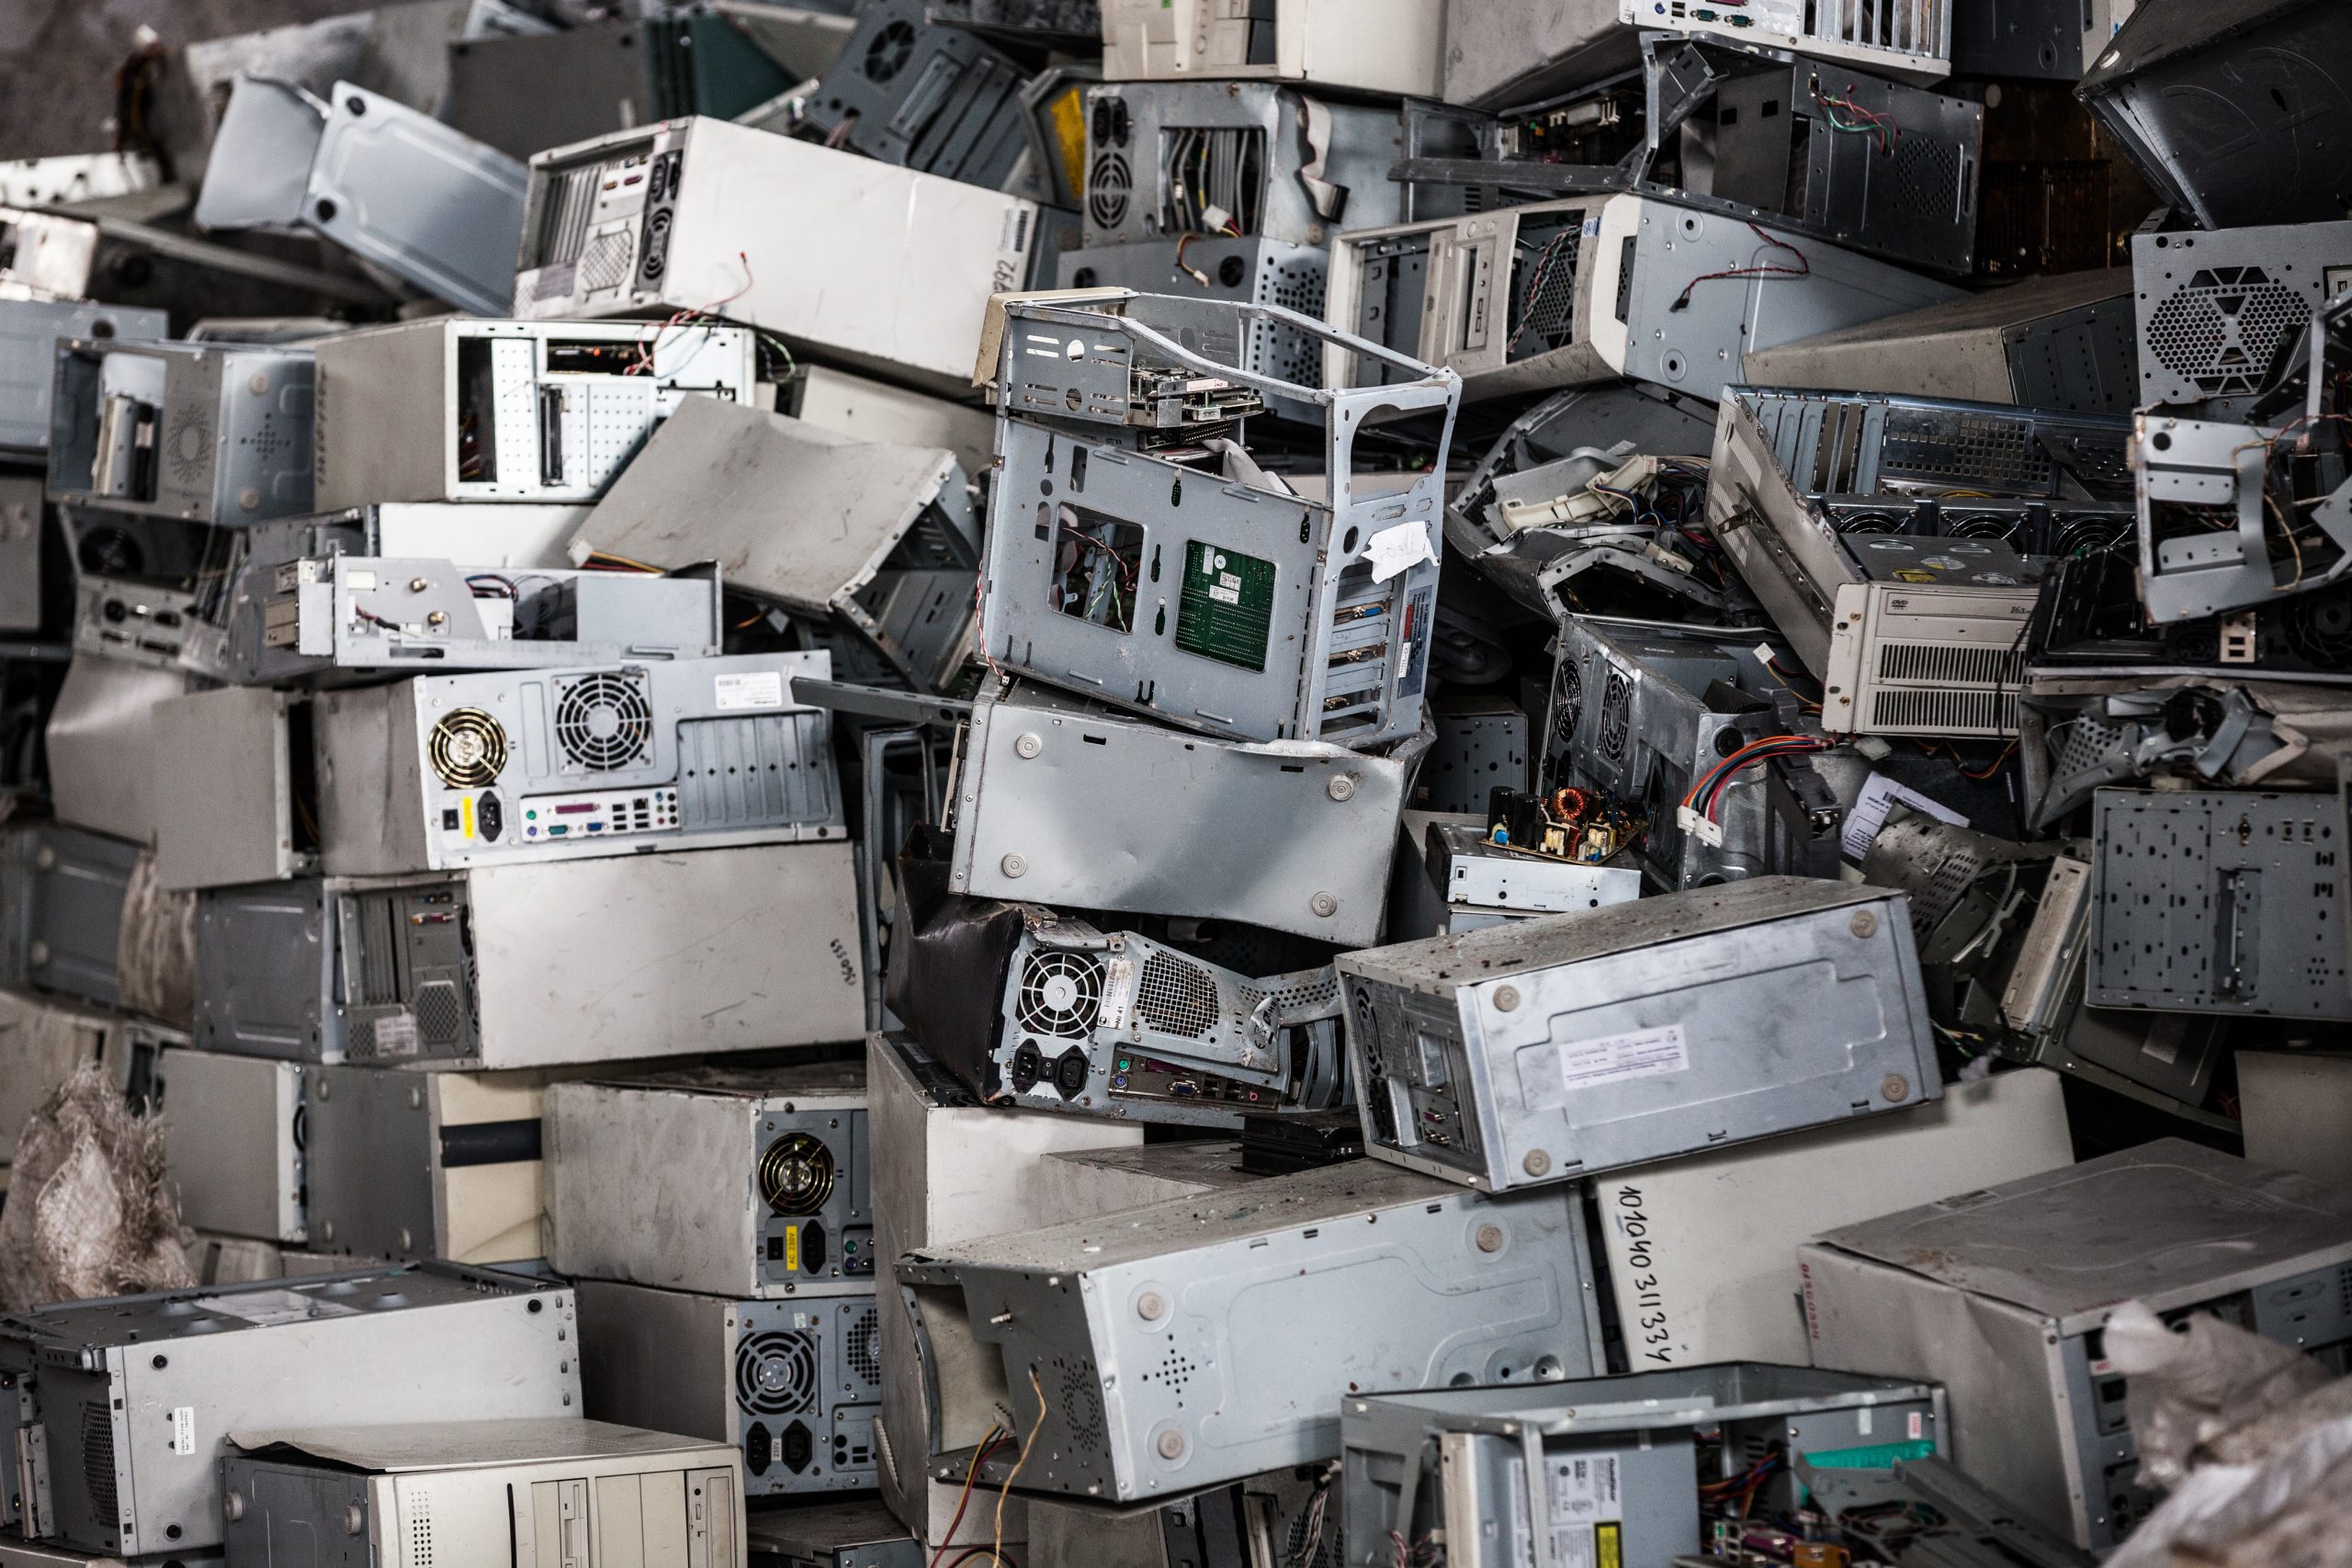 Image d'ordinateurs en vrac en attendant d'être recyclées ou réparées. Expertise financière et informatique, Evernex Capital solutions.